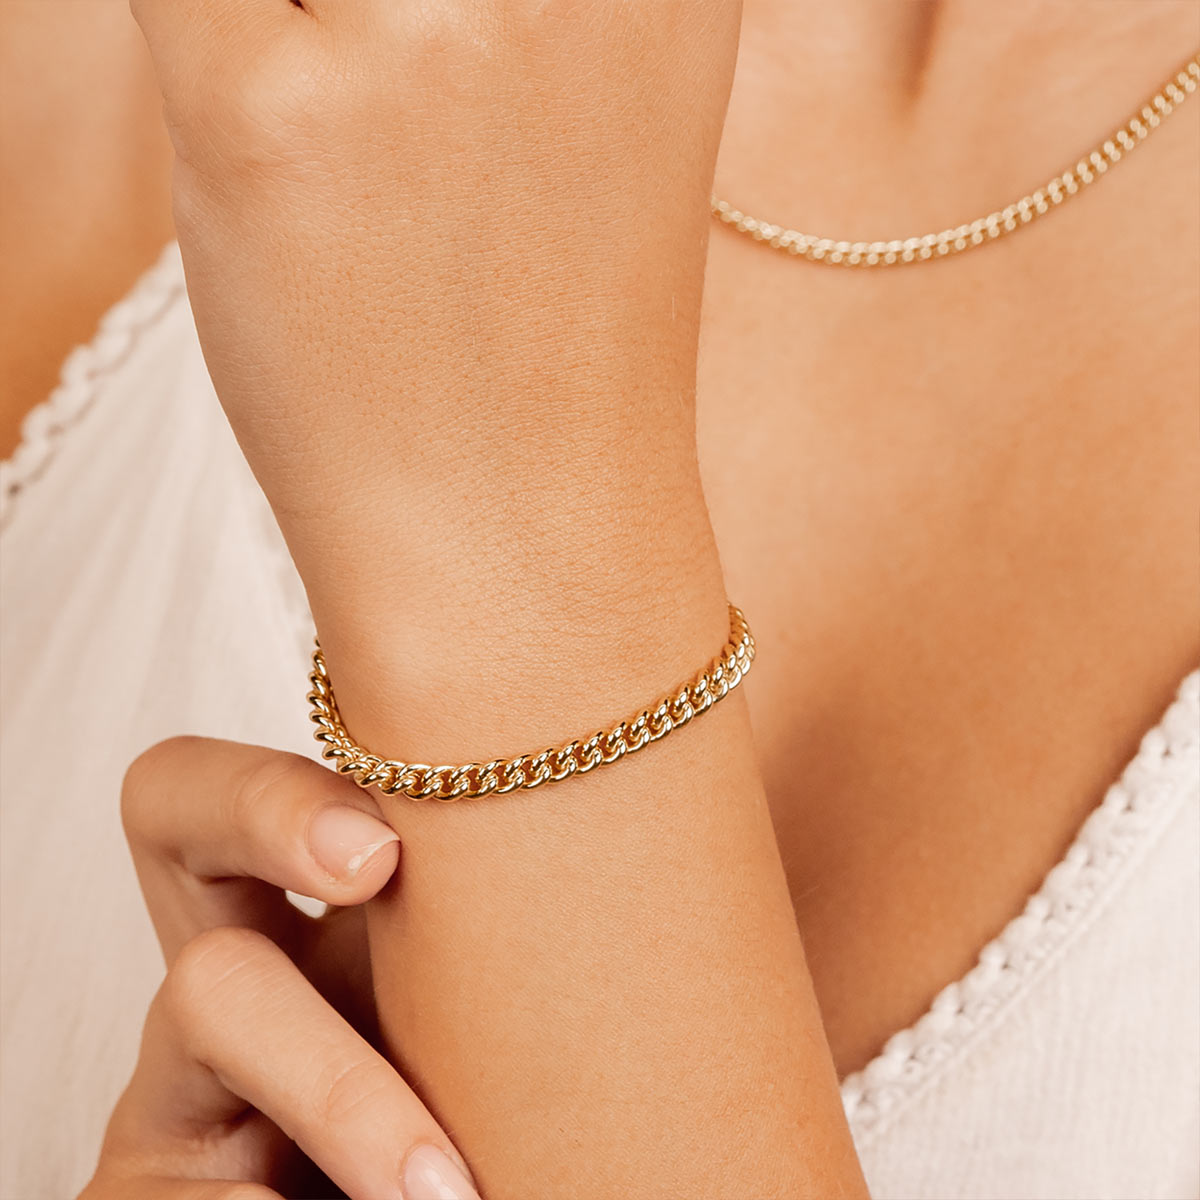 Affordable gold link chain bracelet